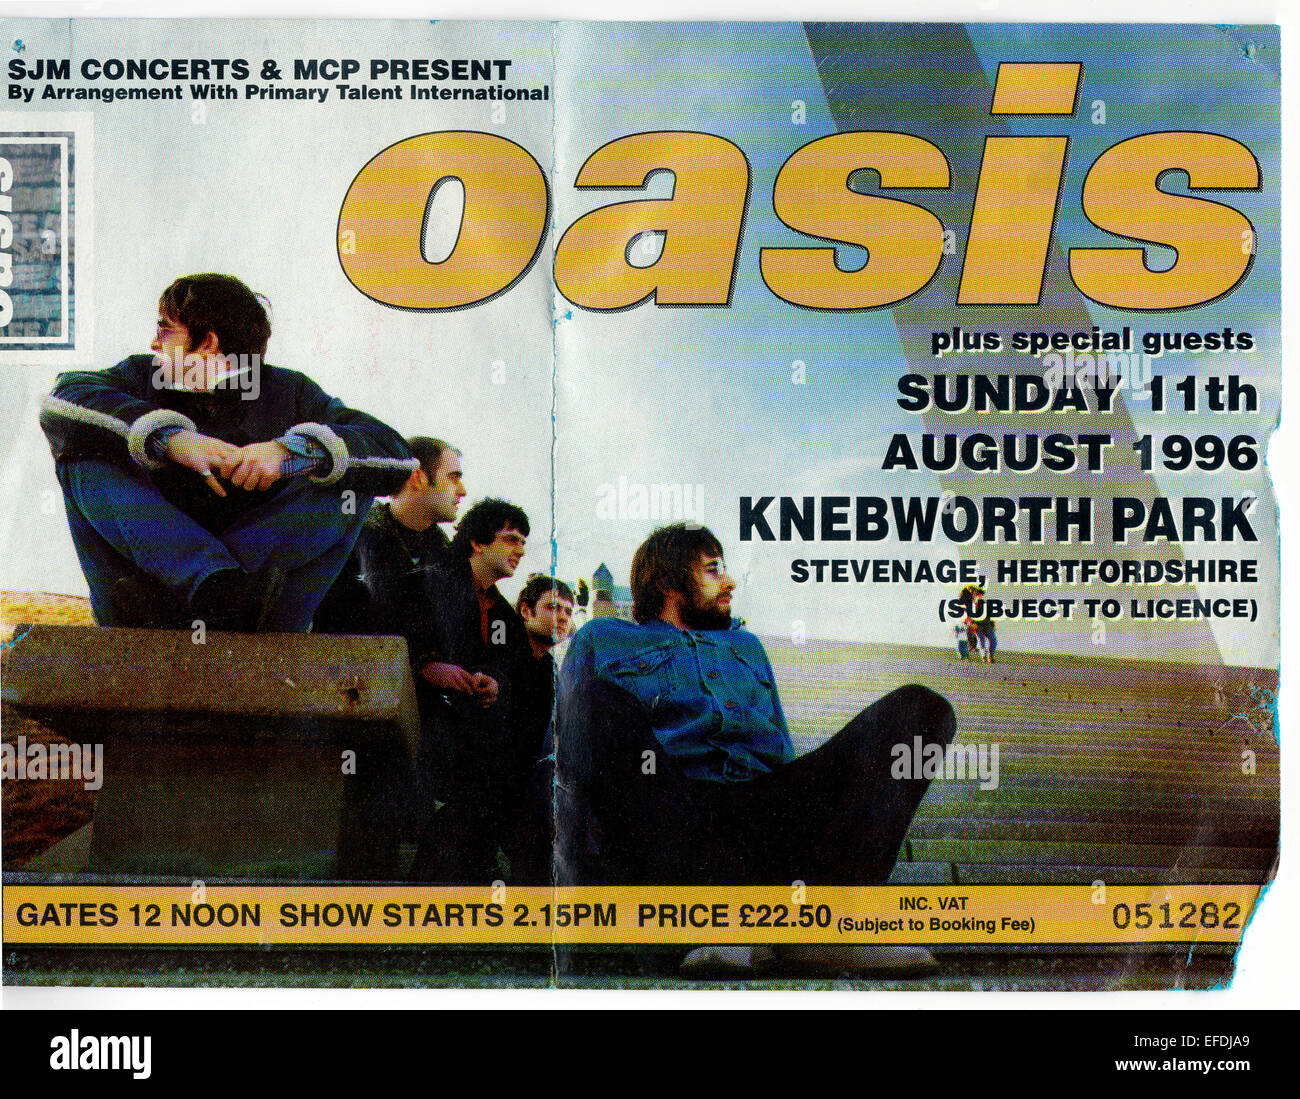 Verwendet Oasis Konzert Ticket Stub aus Knebworth Park, Stevenage, Hertfordshire, Großbritannien - Sonntag, 11. August 1996. Stockfoto